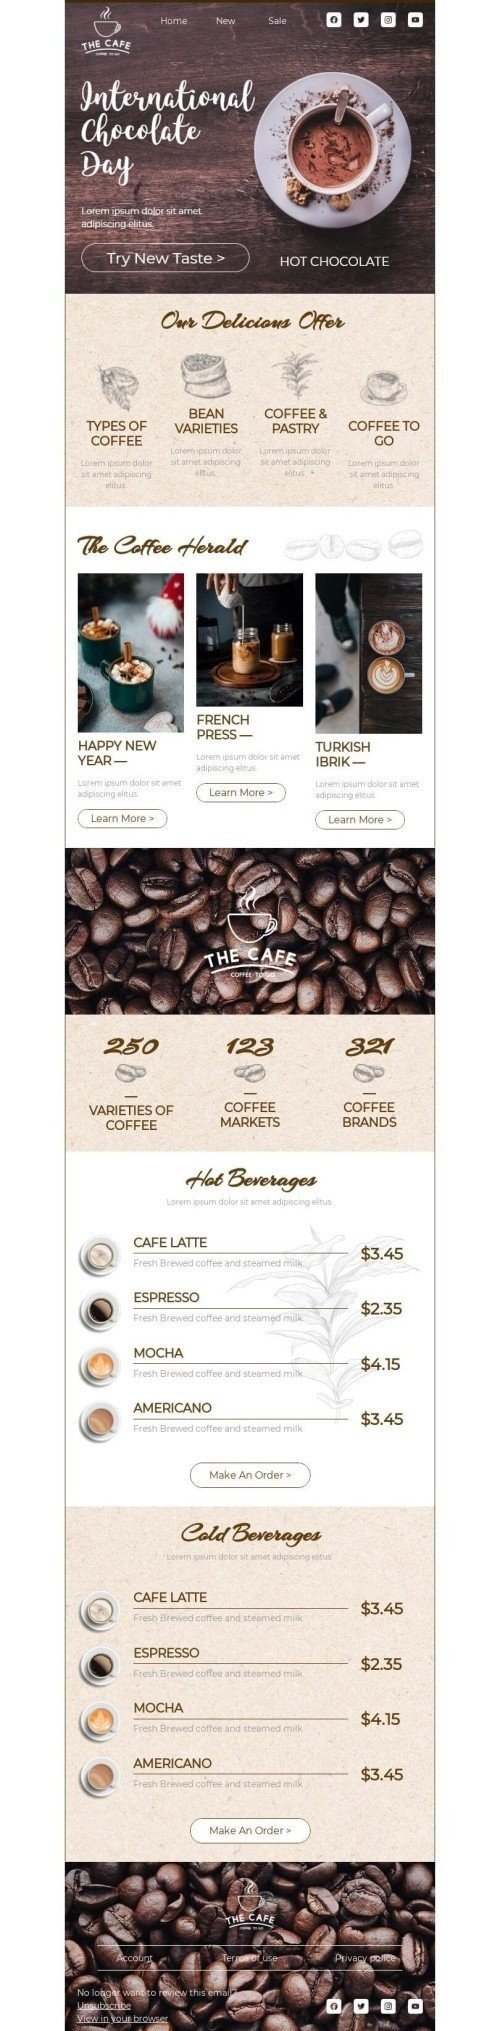 Der internationale Tag der Schokolade E-Mail-Vorlage «Probieren Sie einen neuen Geschmack» für Getränke-Branche Desktop-Ansicht